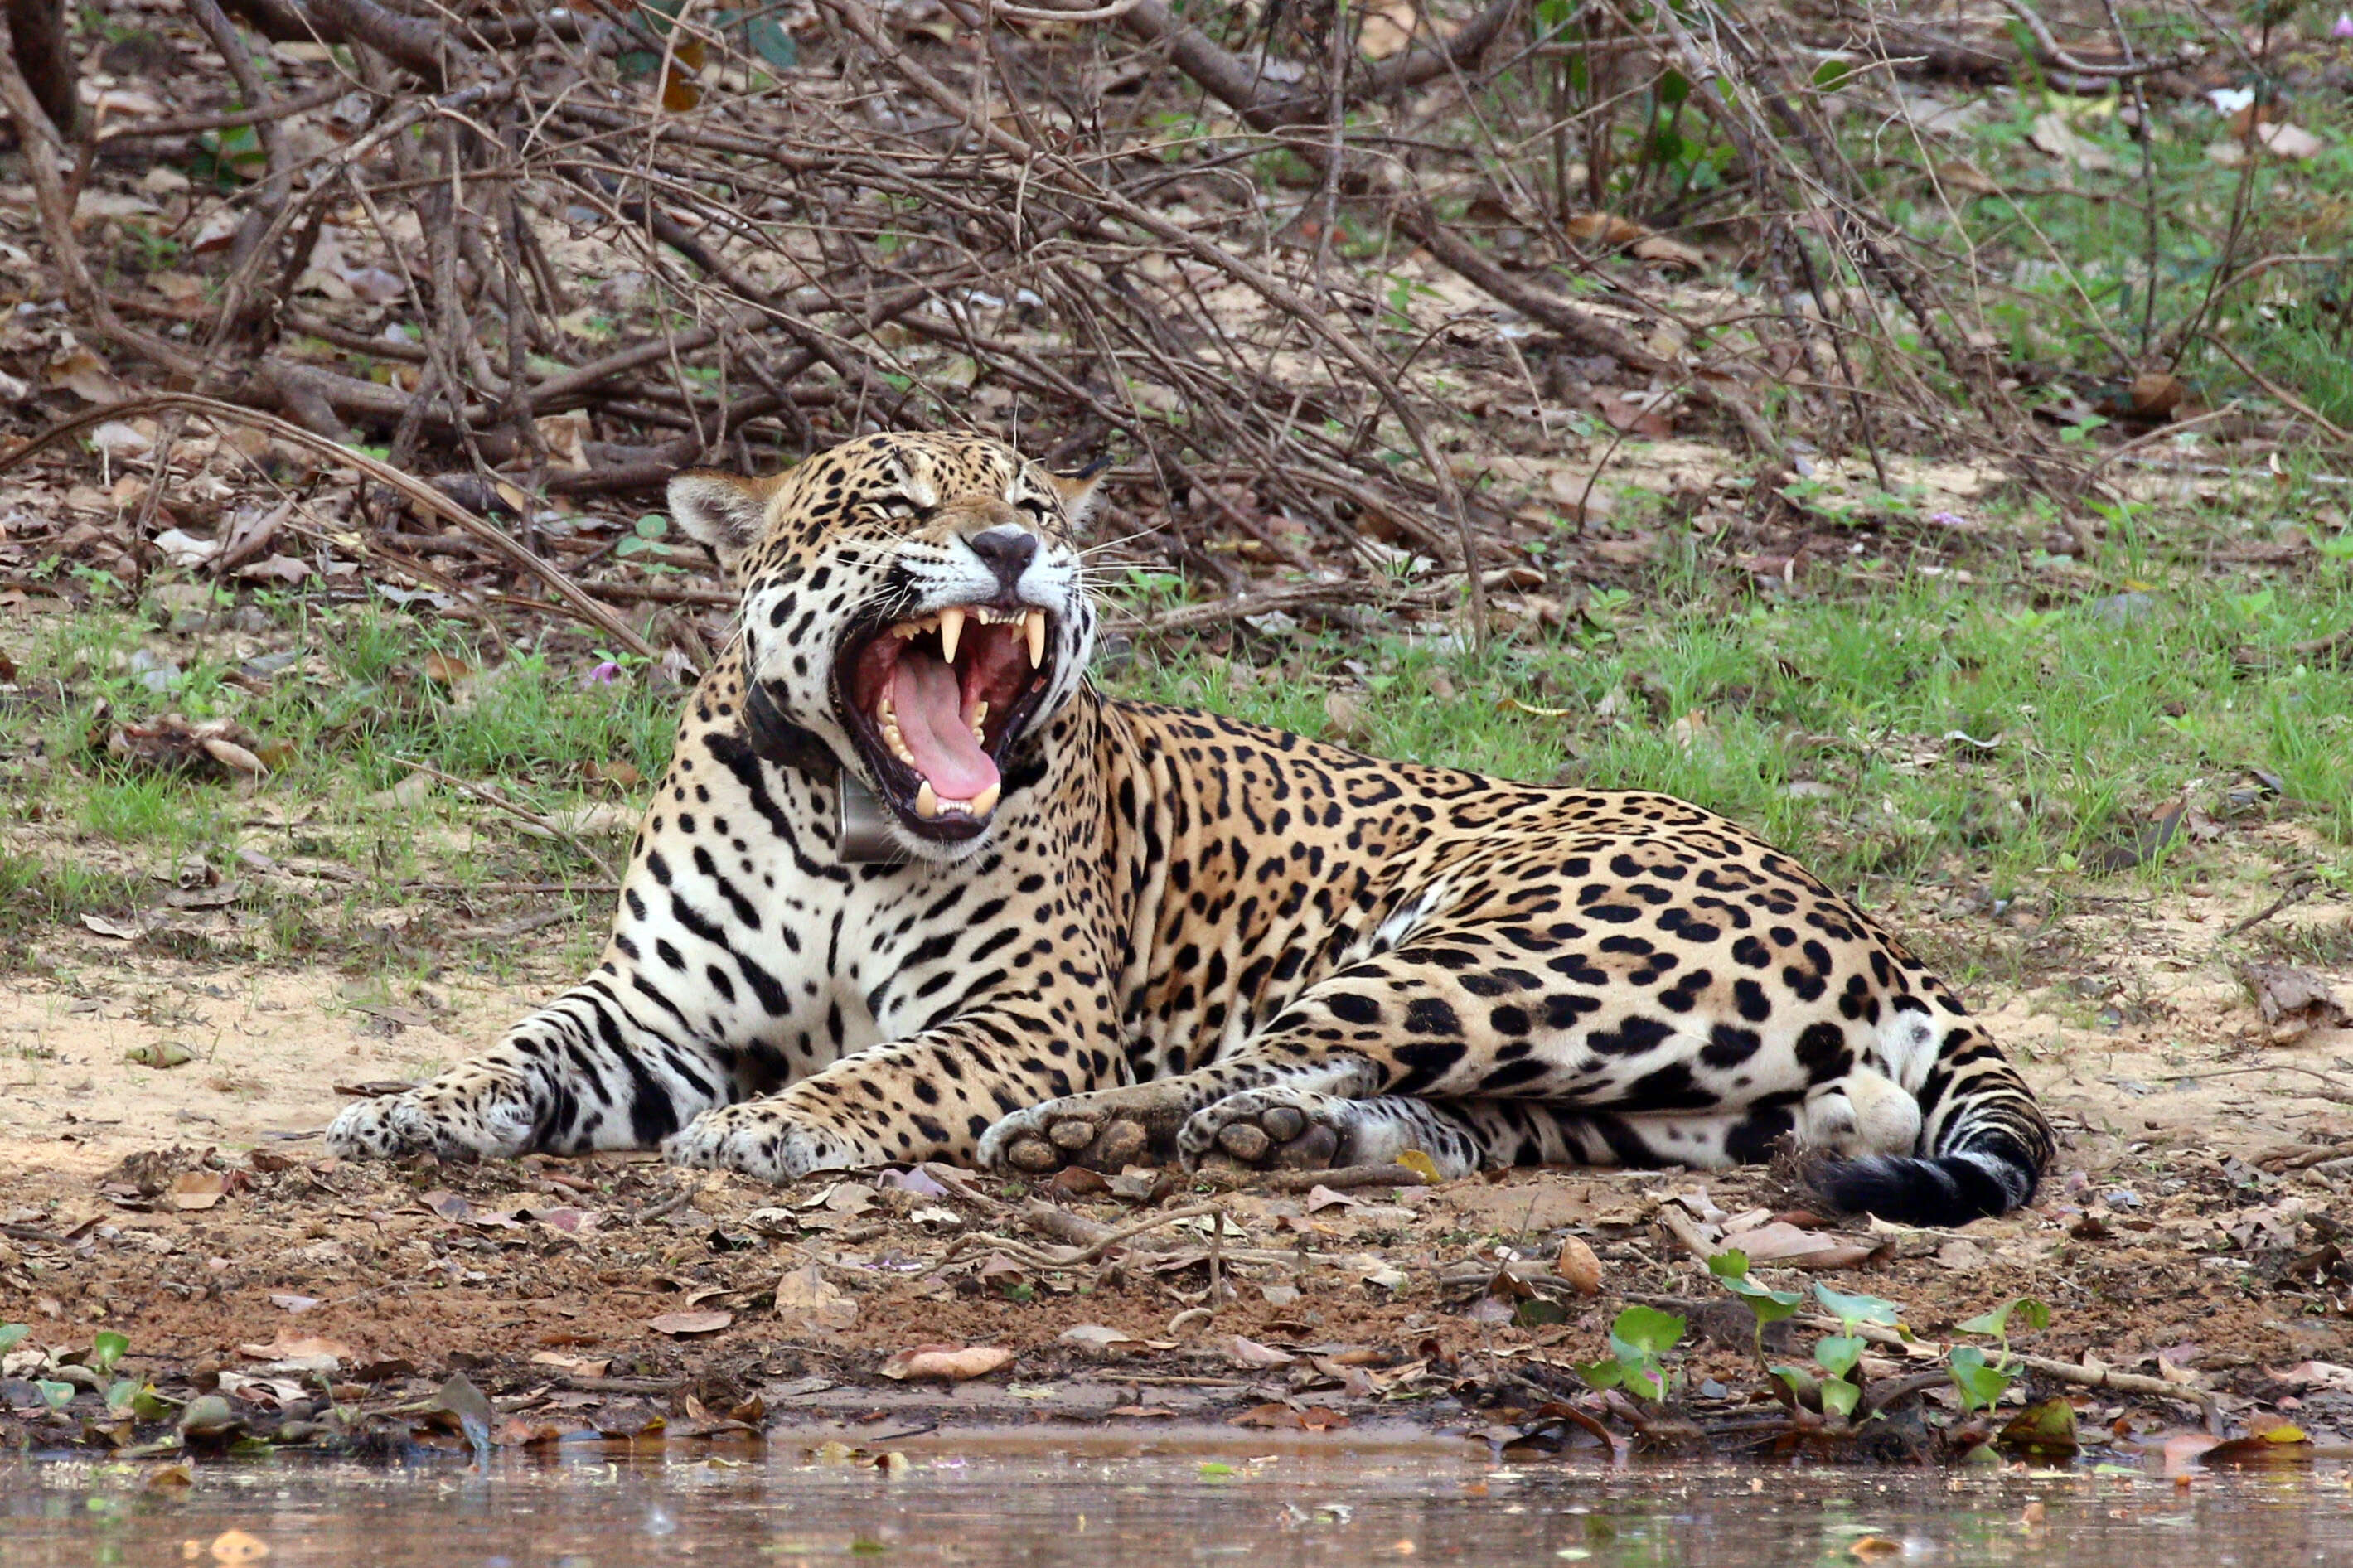 A jaguar in the Amazon rainforest